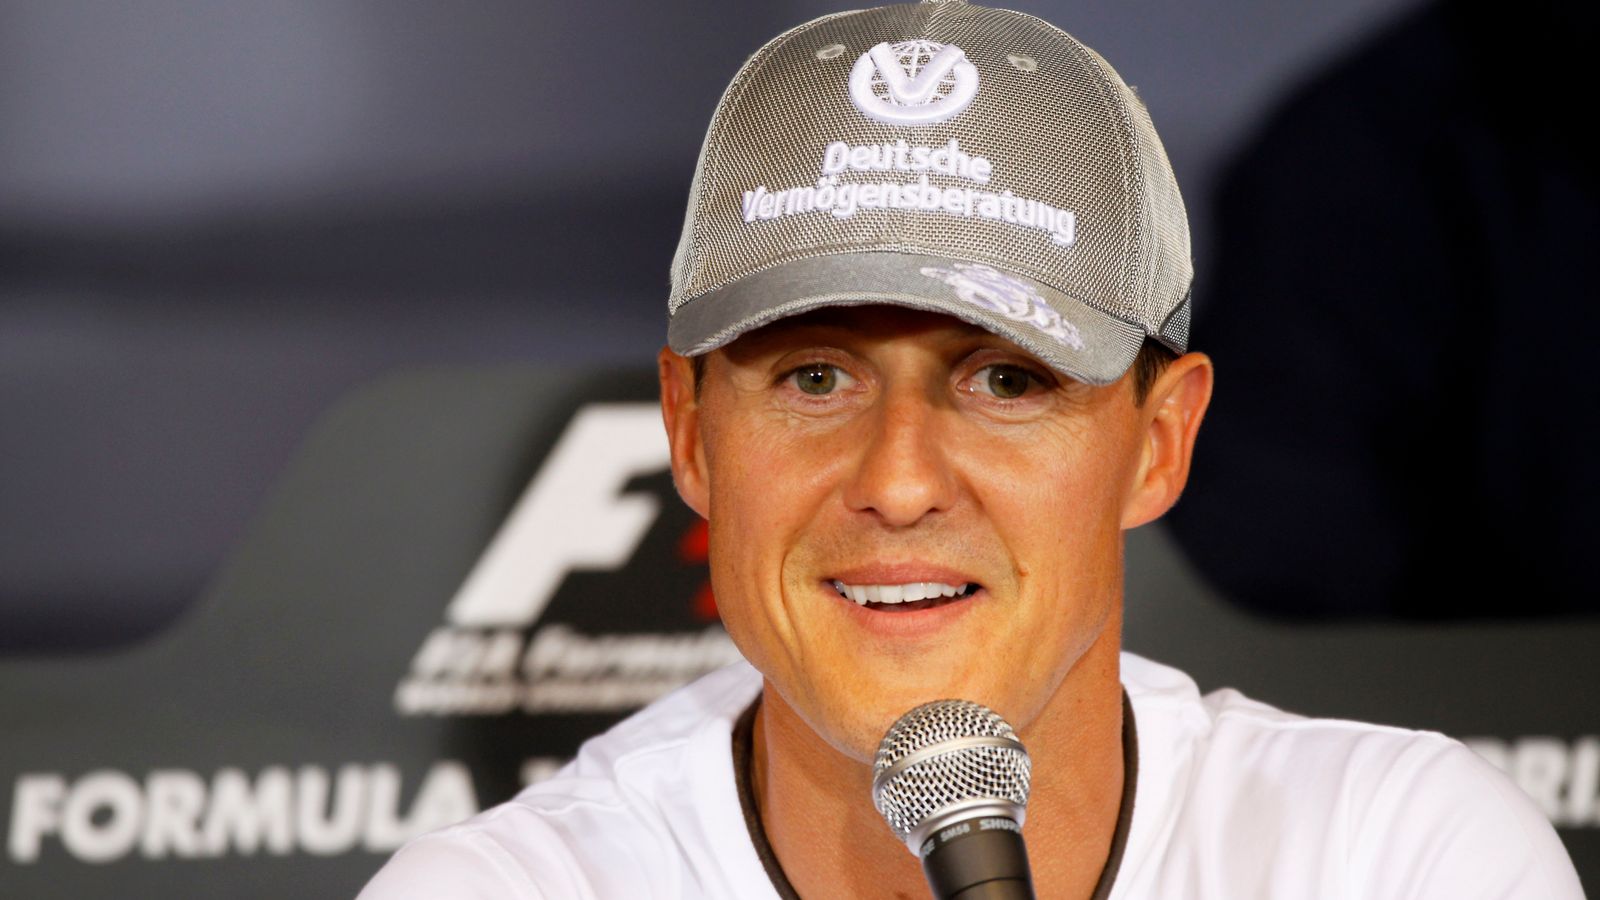 Michael Schumacher: Das deutsche Magazin Die Aktuelle entlässt seinen Redakteur und entschuldigt sich bei Schumachers Familie |  F1-Nachrichten